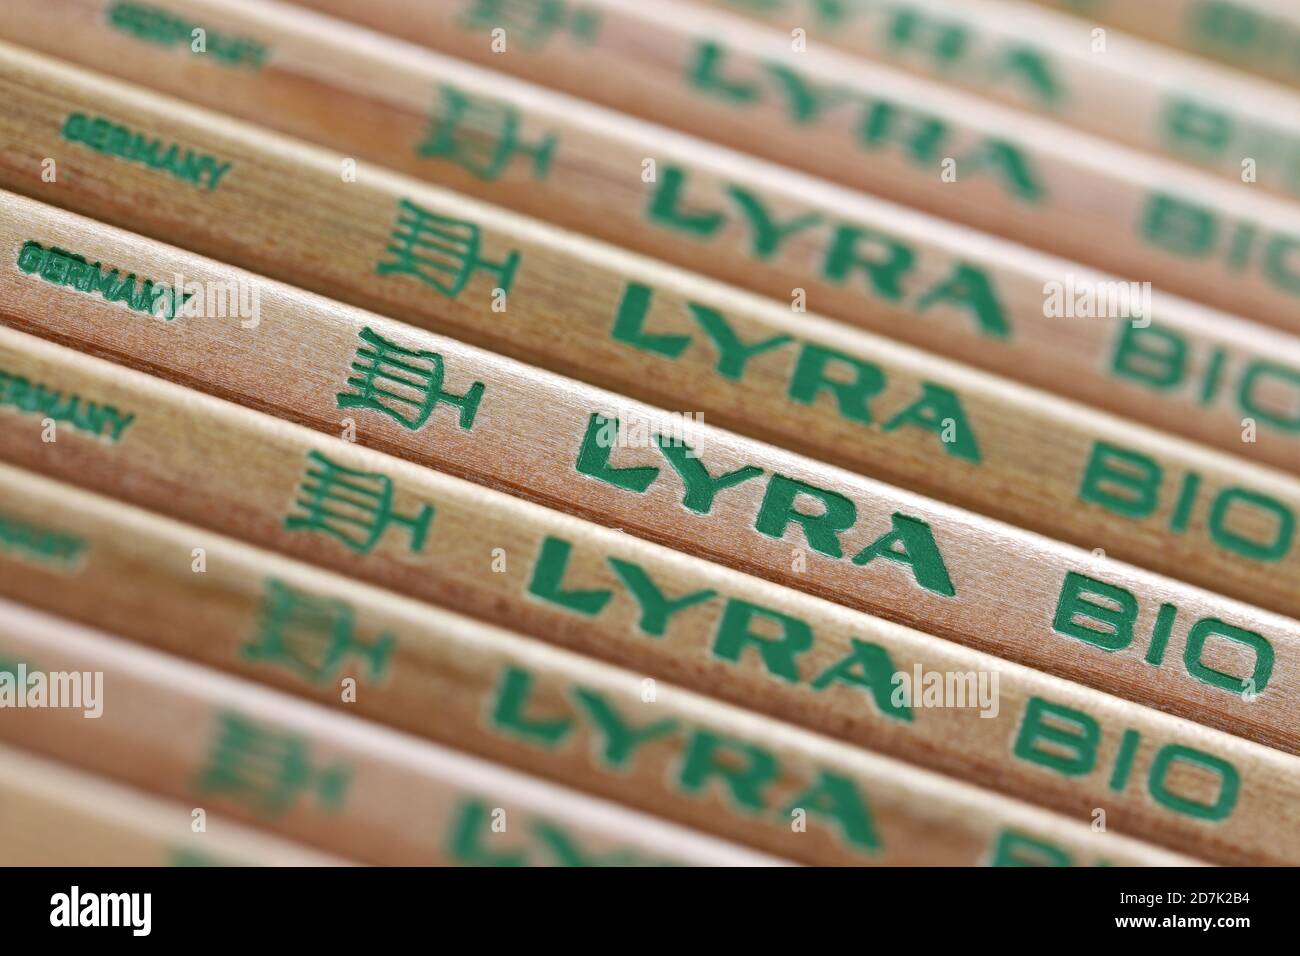 Lyra-Markierung bei Bleistiften. Lyra ist die älteste Bleistiftfabrik in Nürnberg und gehört seit 2008 zur italienischen FILA-Gruppe. Stockfoto